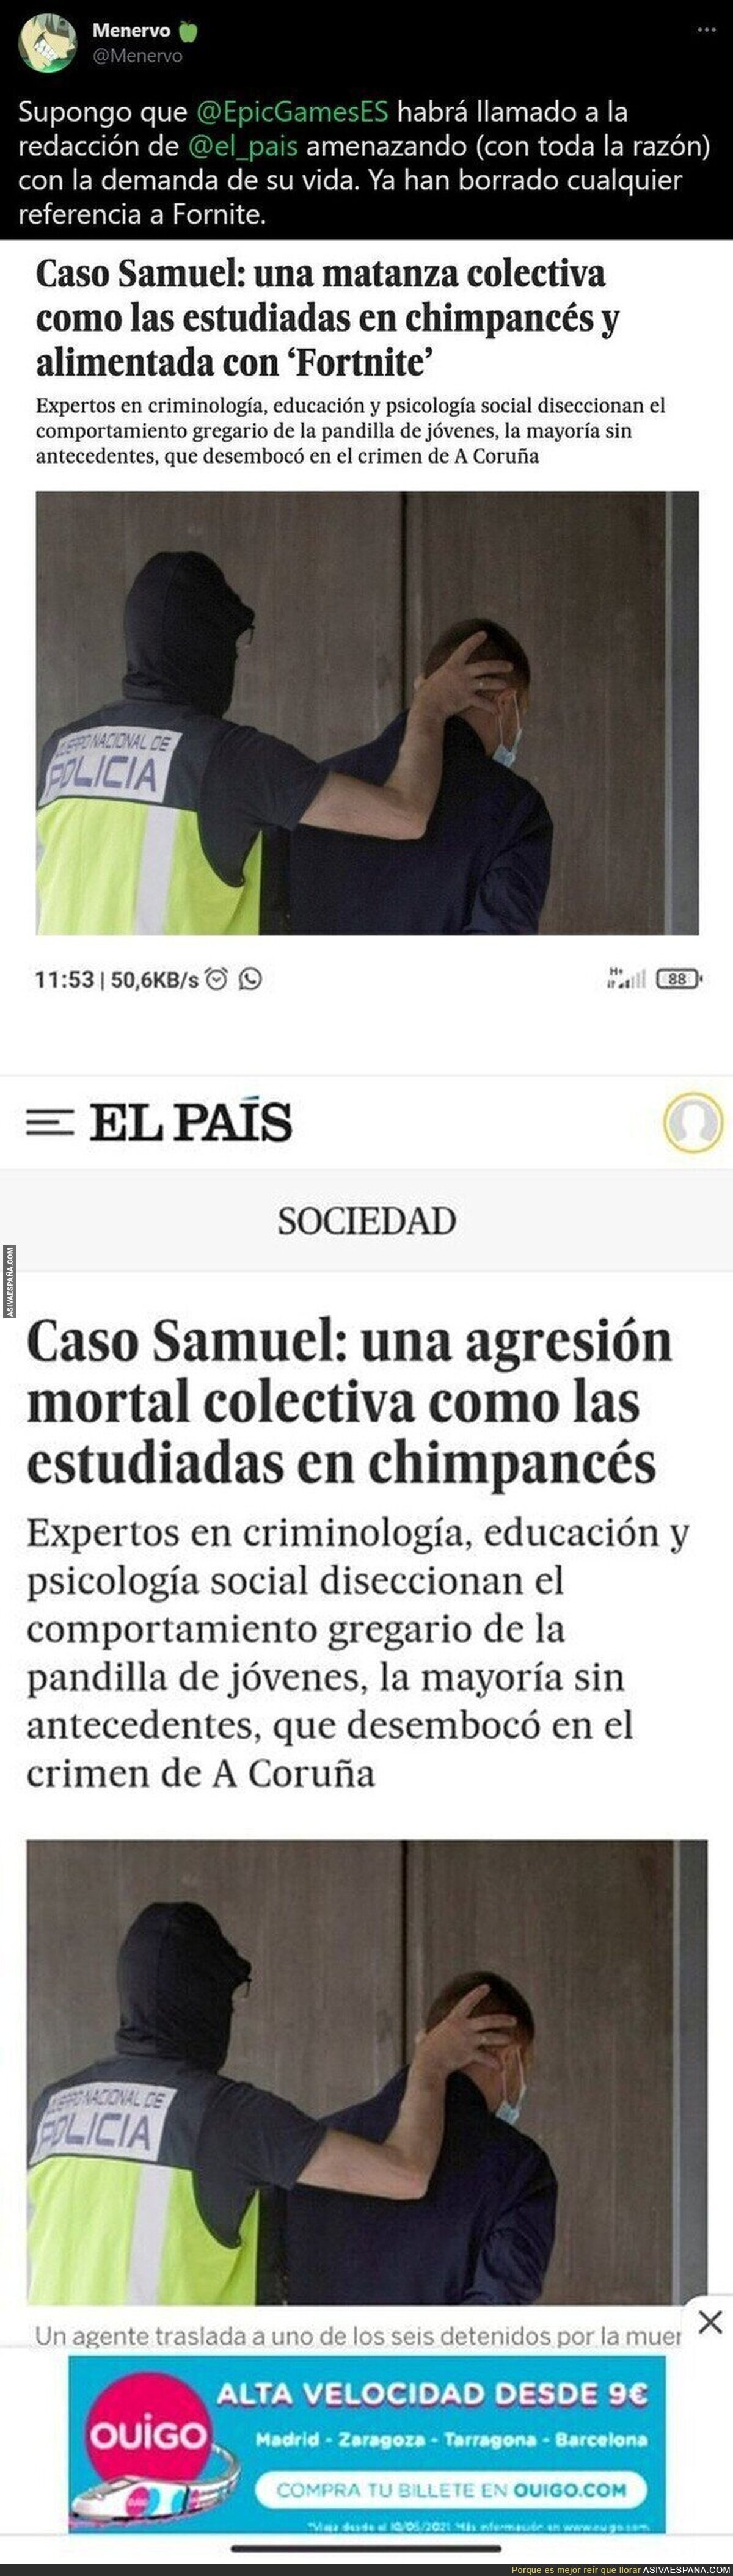 La irresponsabilidad tremenda de 'El País' relacionando el asesinato de Samuel con el Fortnite que han tenido que borrar